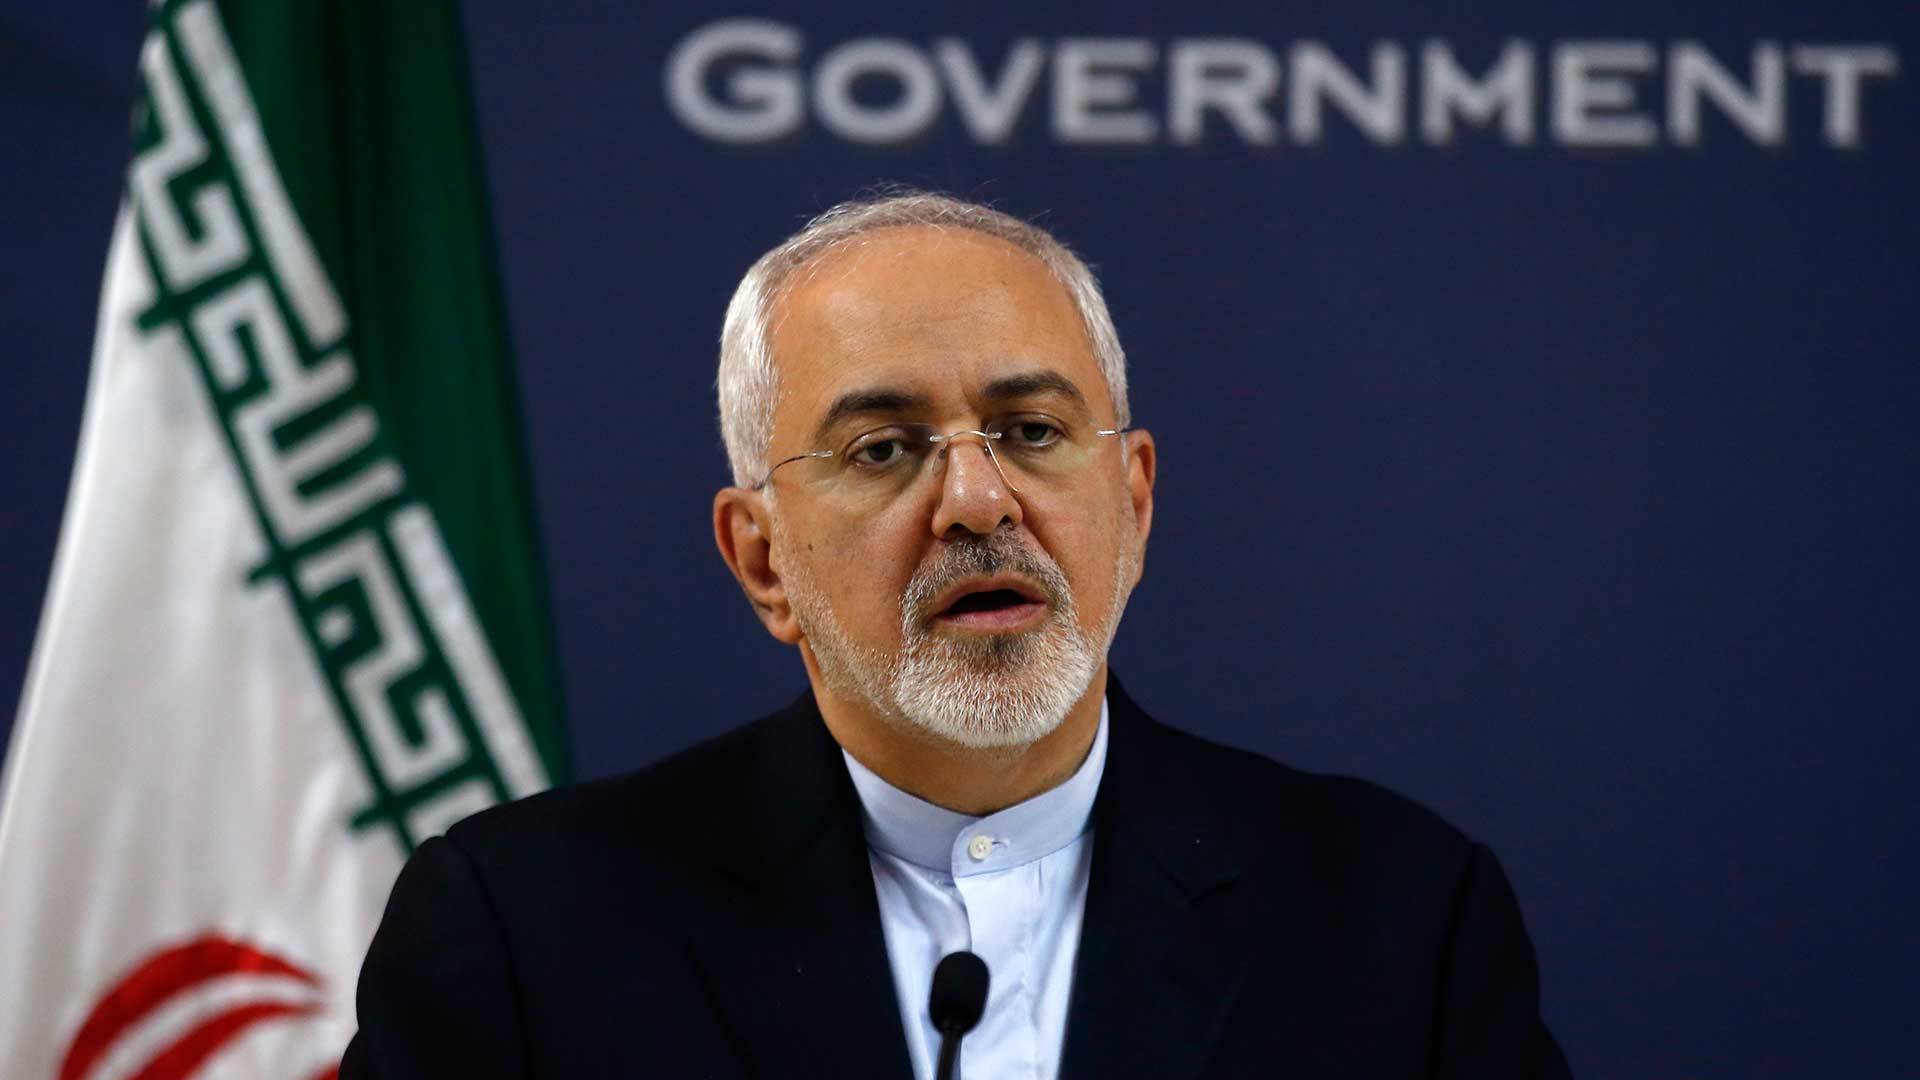 El gobierno de Teherán critica el "extremismo" de la UE respecto a Irán